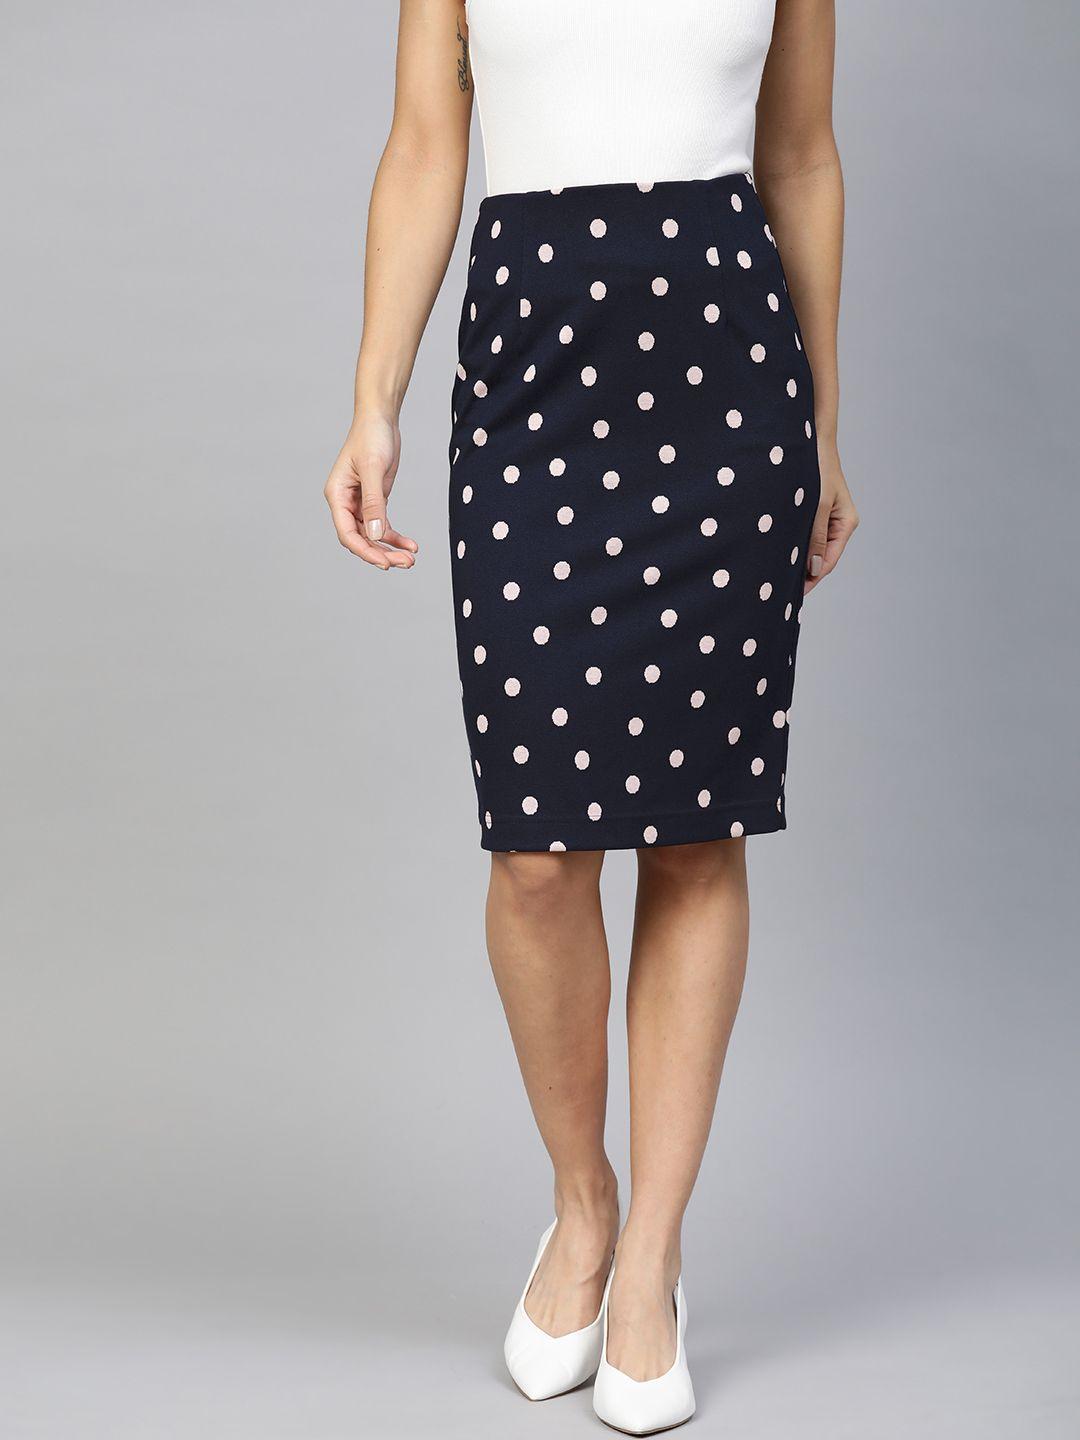 marks & spencer navy & white polka dot print pencil skirt